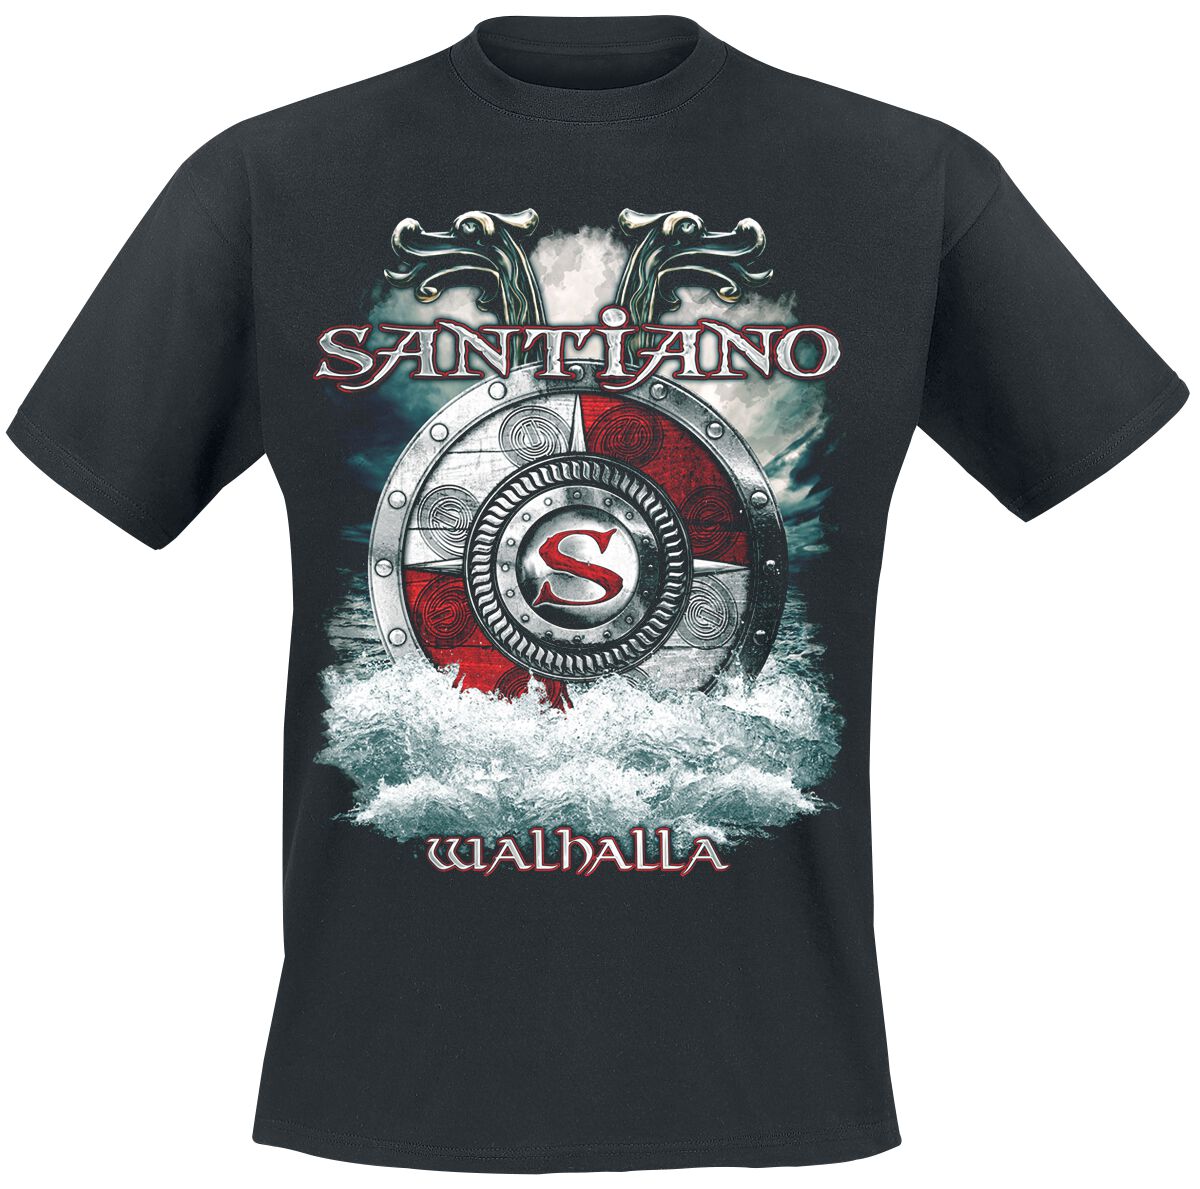 Santiano T-Shirt - Walhalla - M bis XXL - für Männer - Größe XXL - schwarz  - Lizenziertes Merchandise!